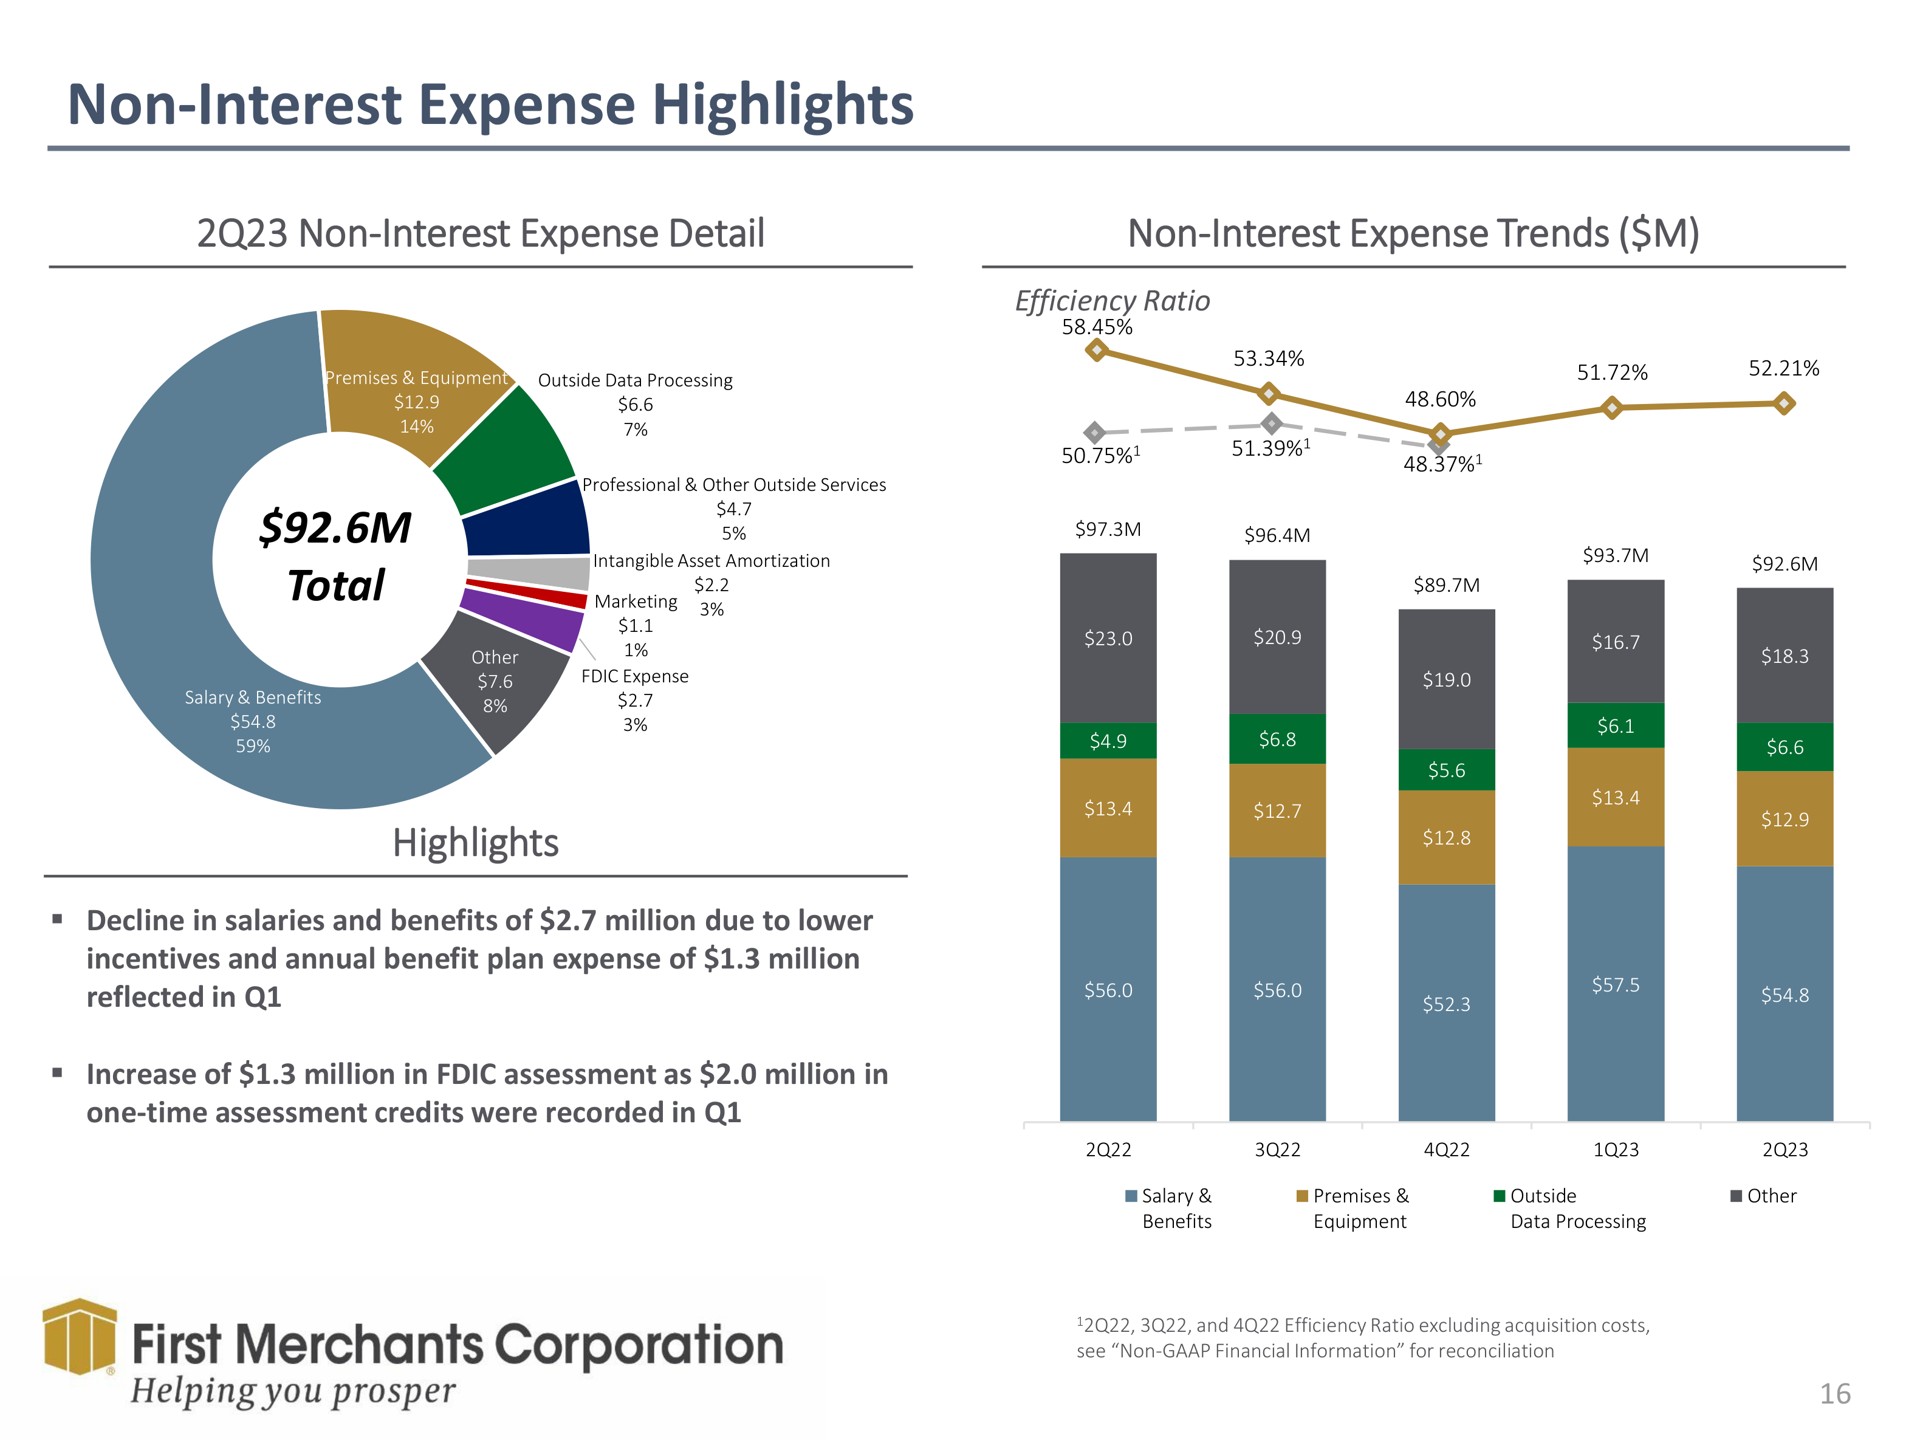 non interest expense highlights total detail trends first merchants corporation helping you prosper | First Merchants